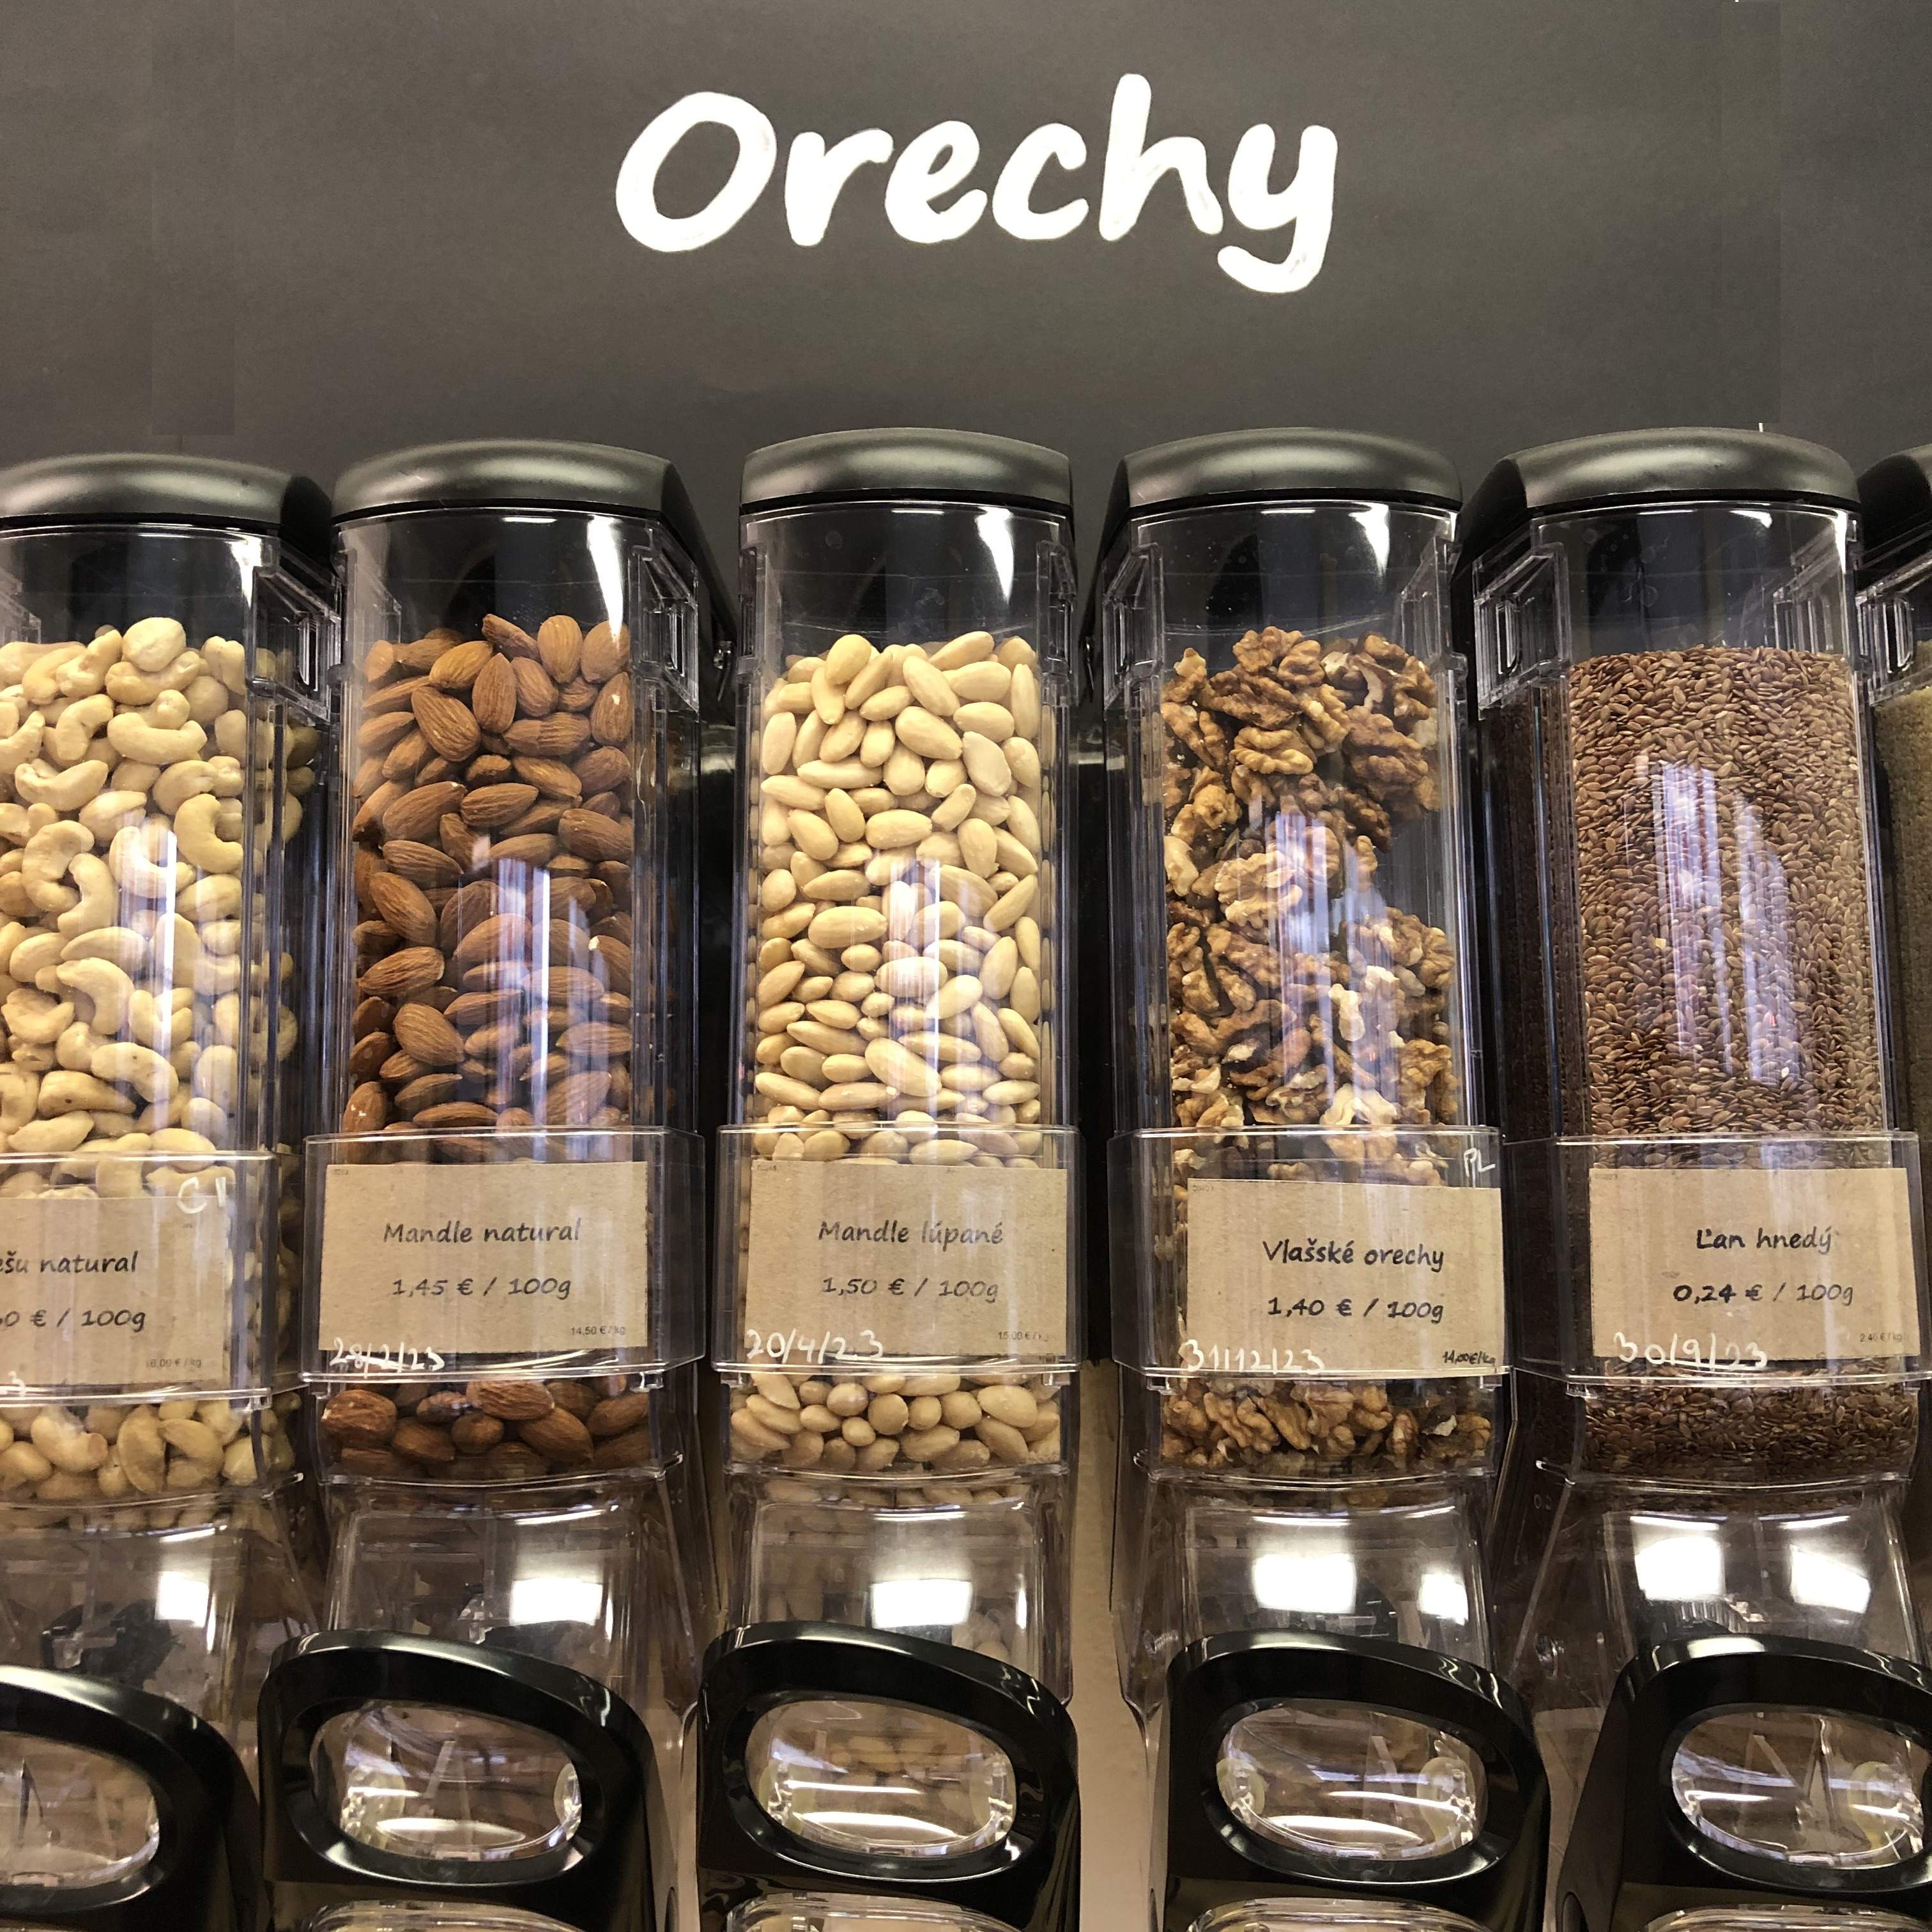 Orechy - Kešu natural